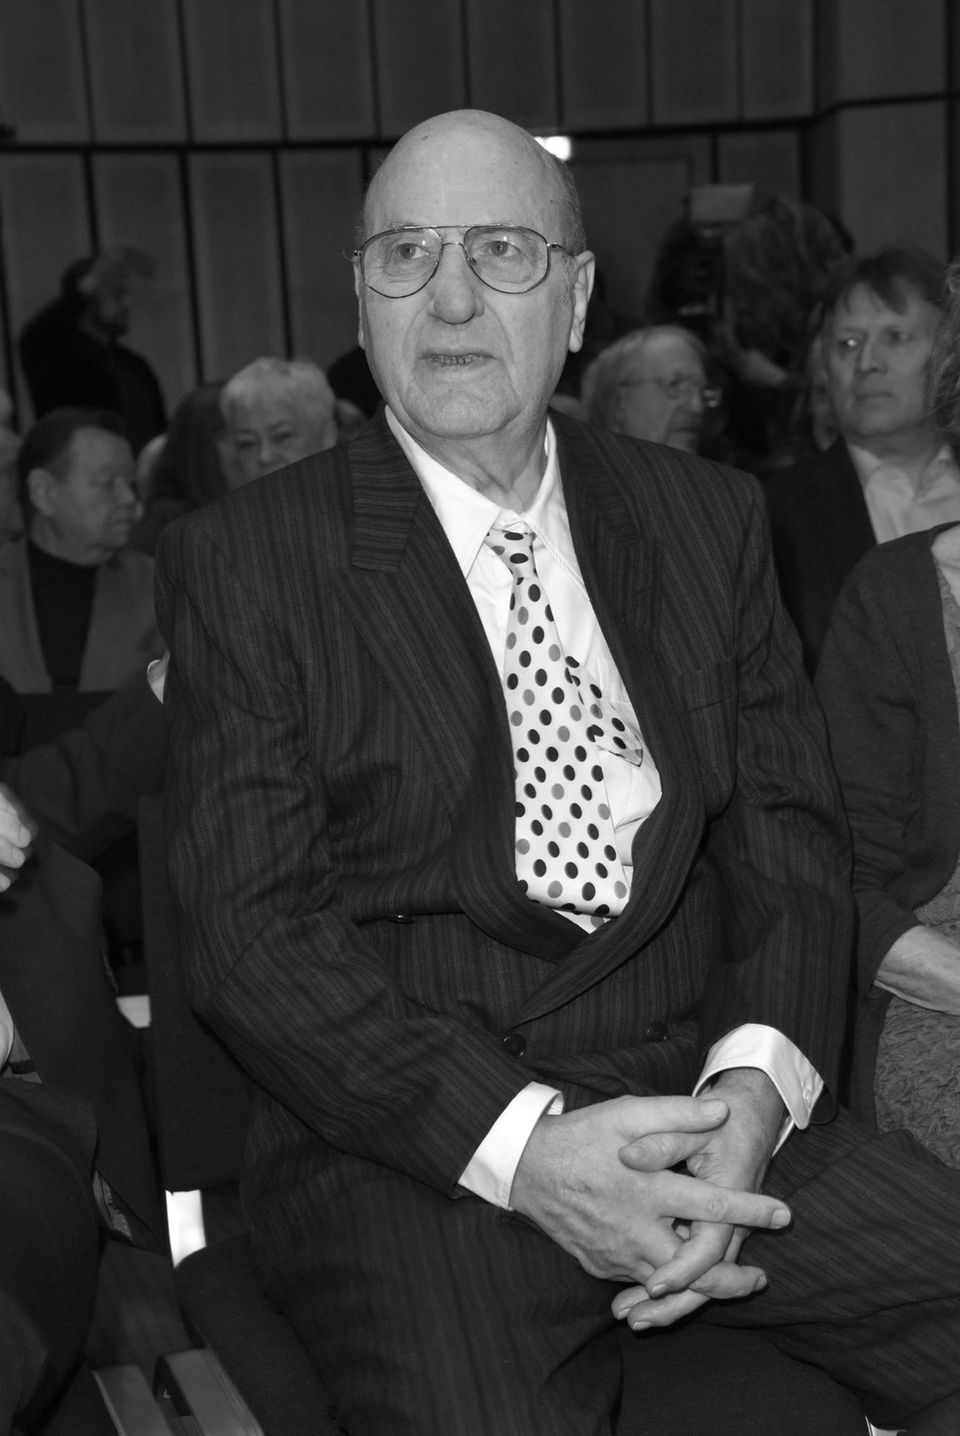 Manfred Krug